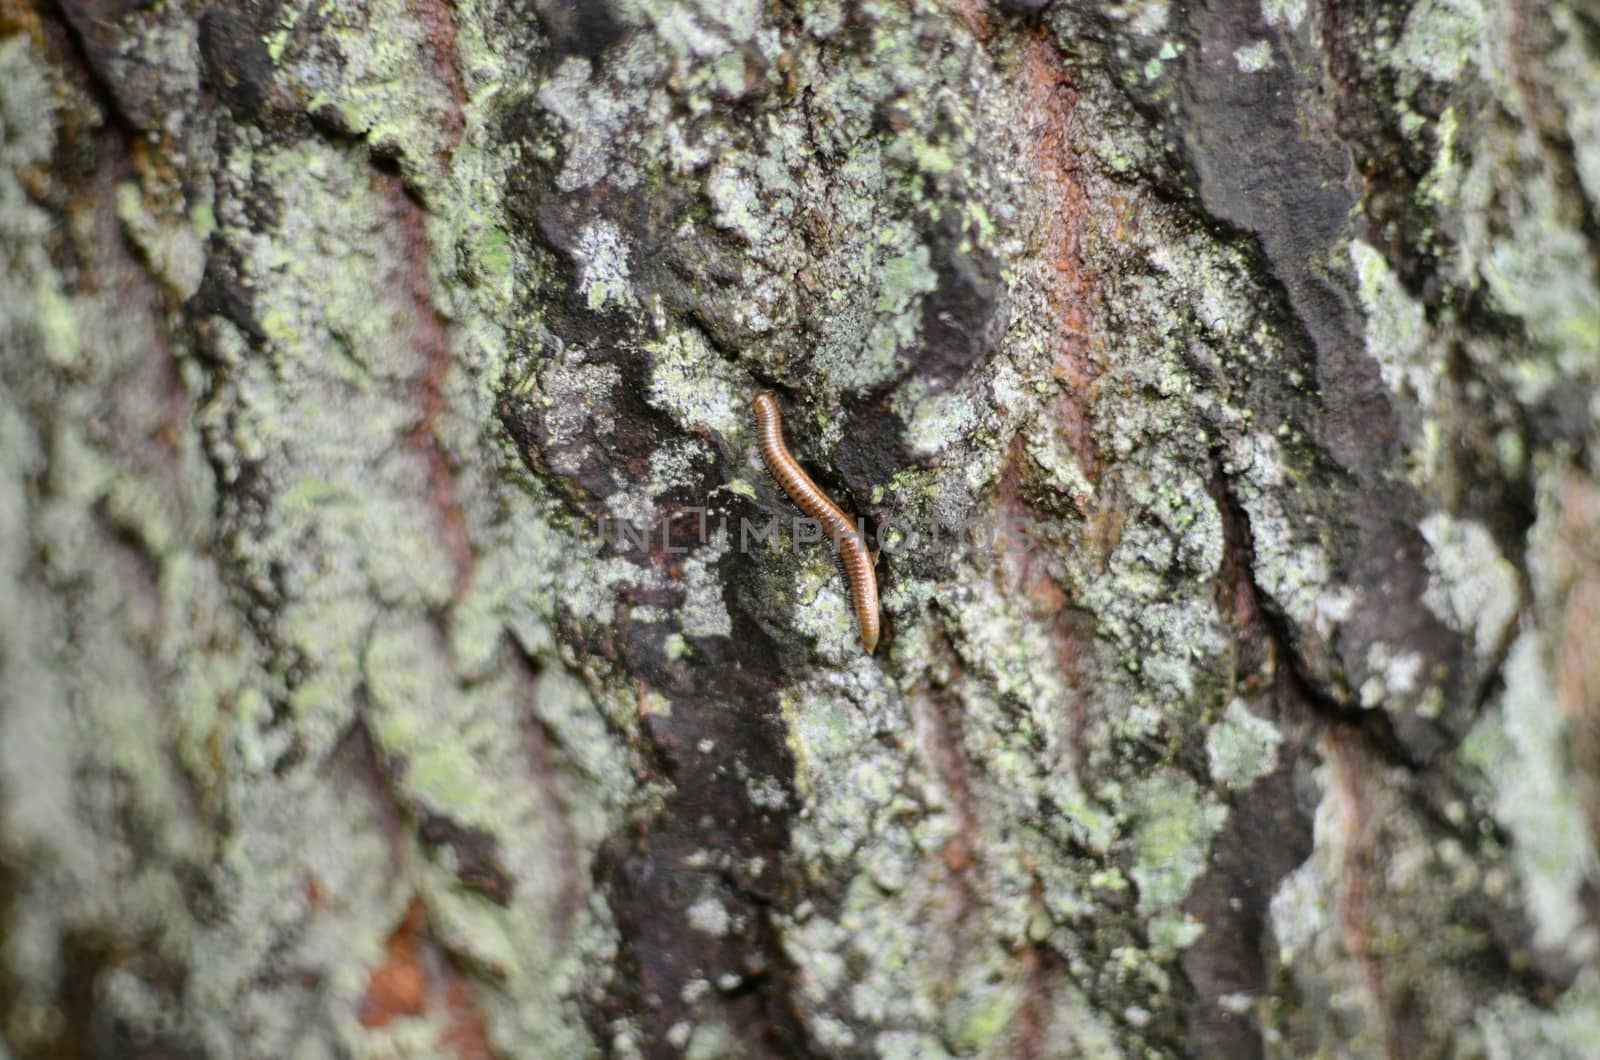 Centipede Hiding in The Bark by fstockluk